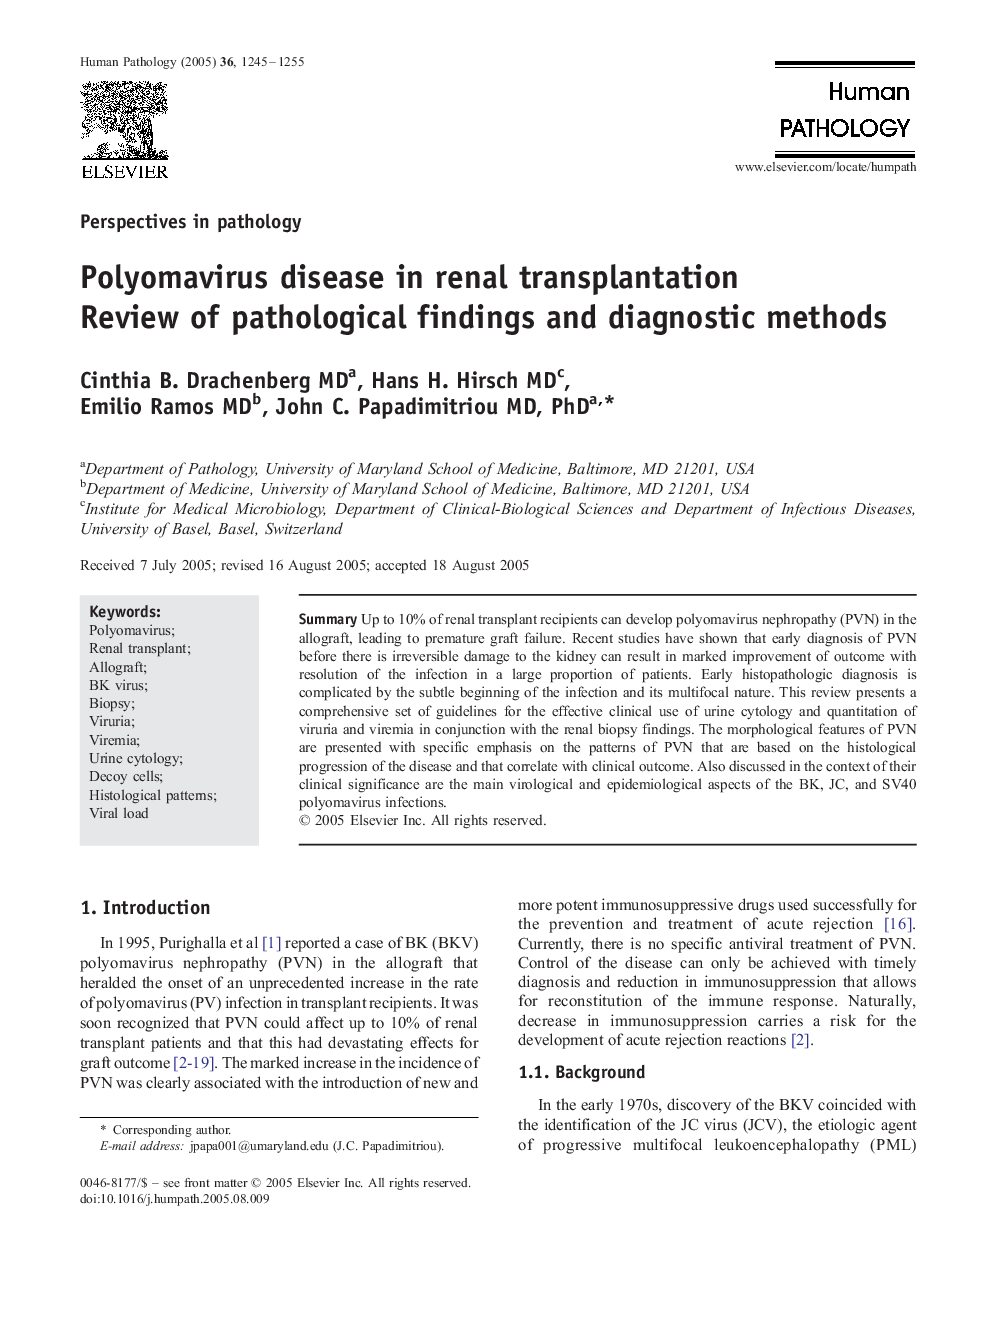 Polyomavirus disease in renal transplantation